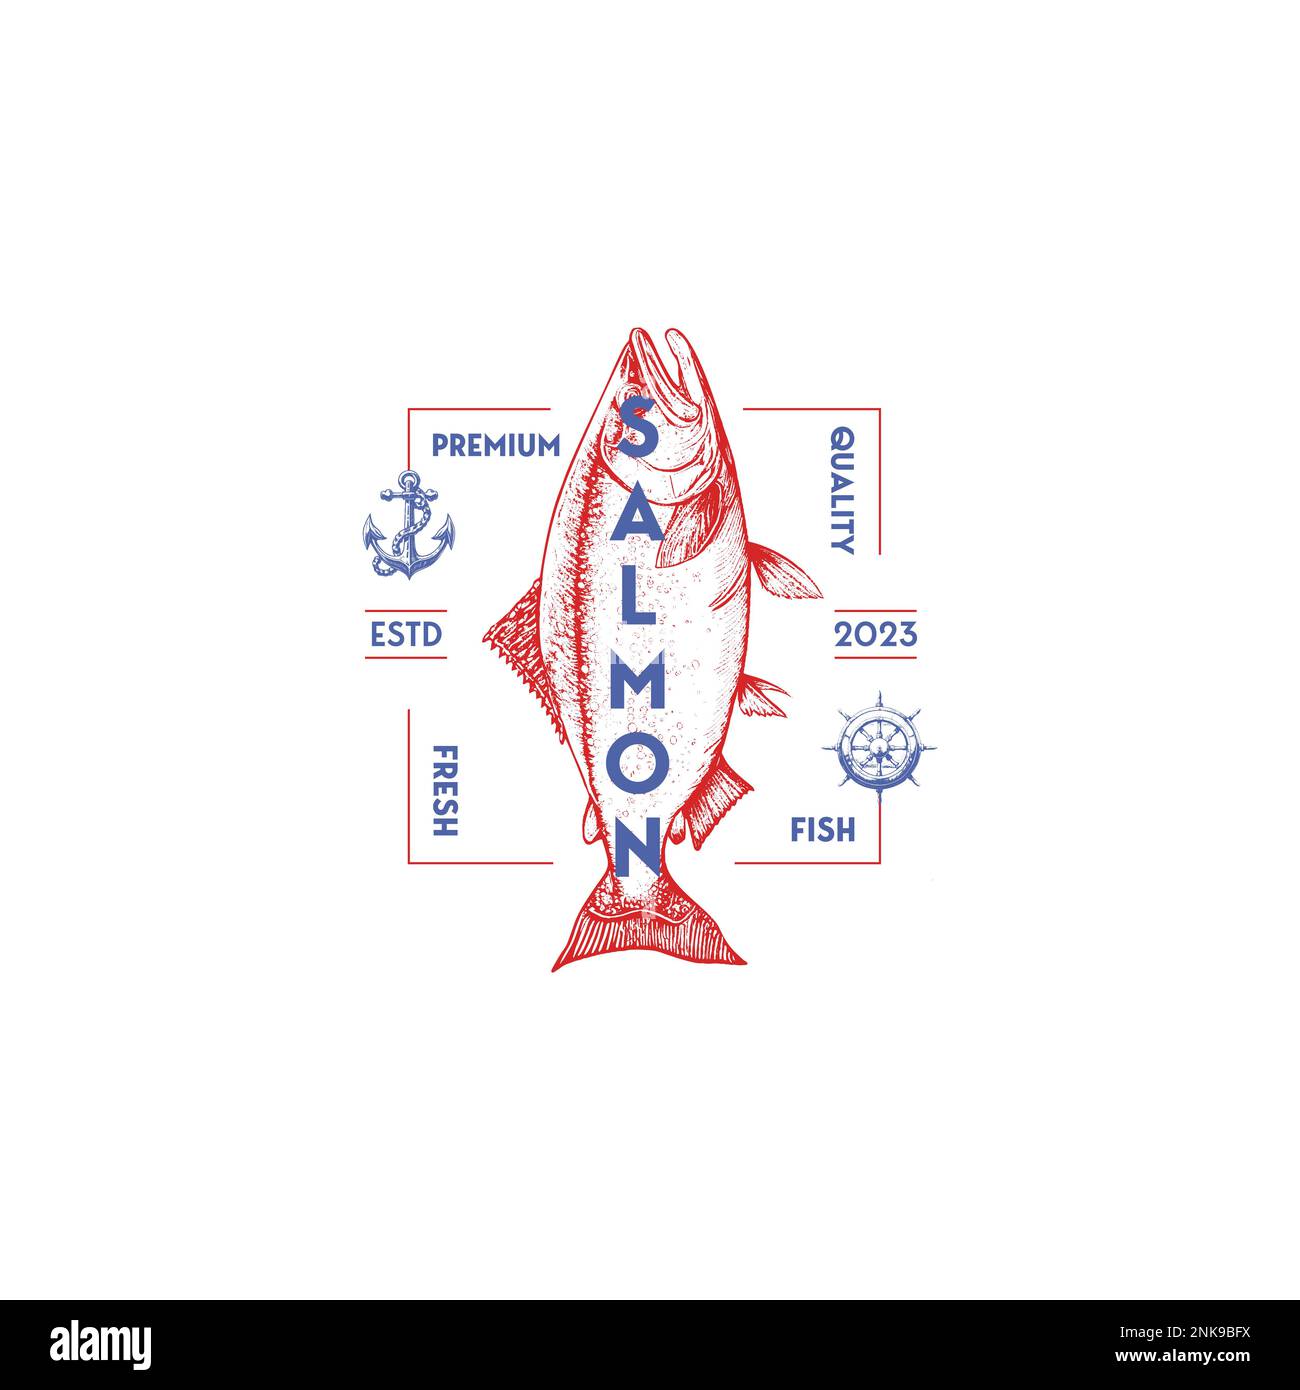 Logo Vector salmone vintage su sfondo bianco. Illustrazioni di pesci dell'Atlantico, del chinook, del calzeye e del salmone rosa Illustrazione Vettoriale